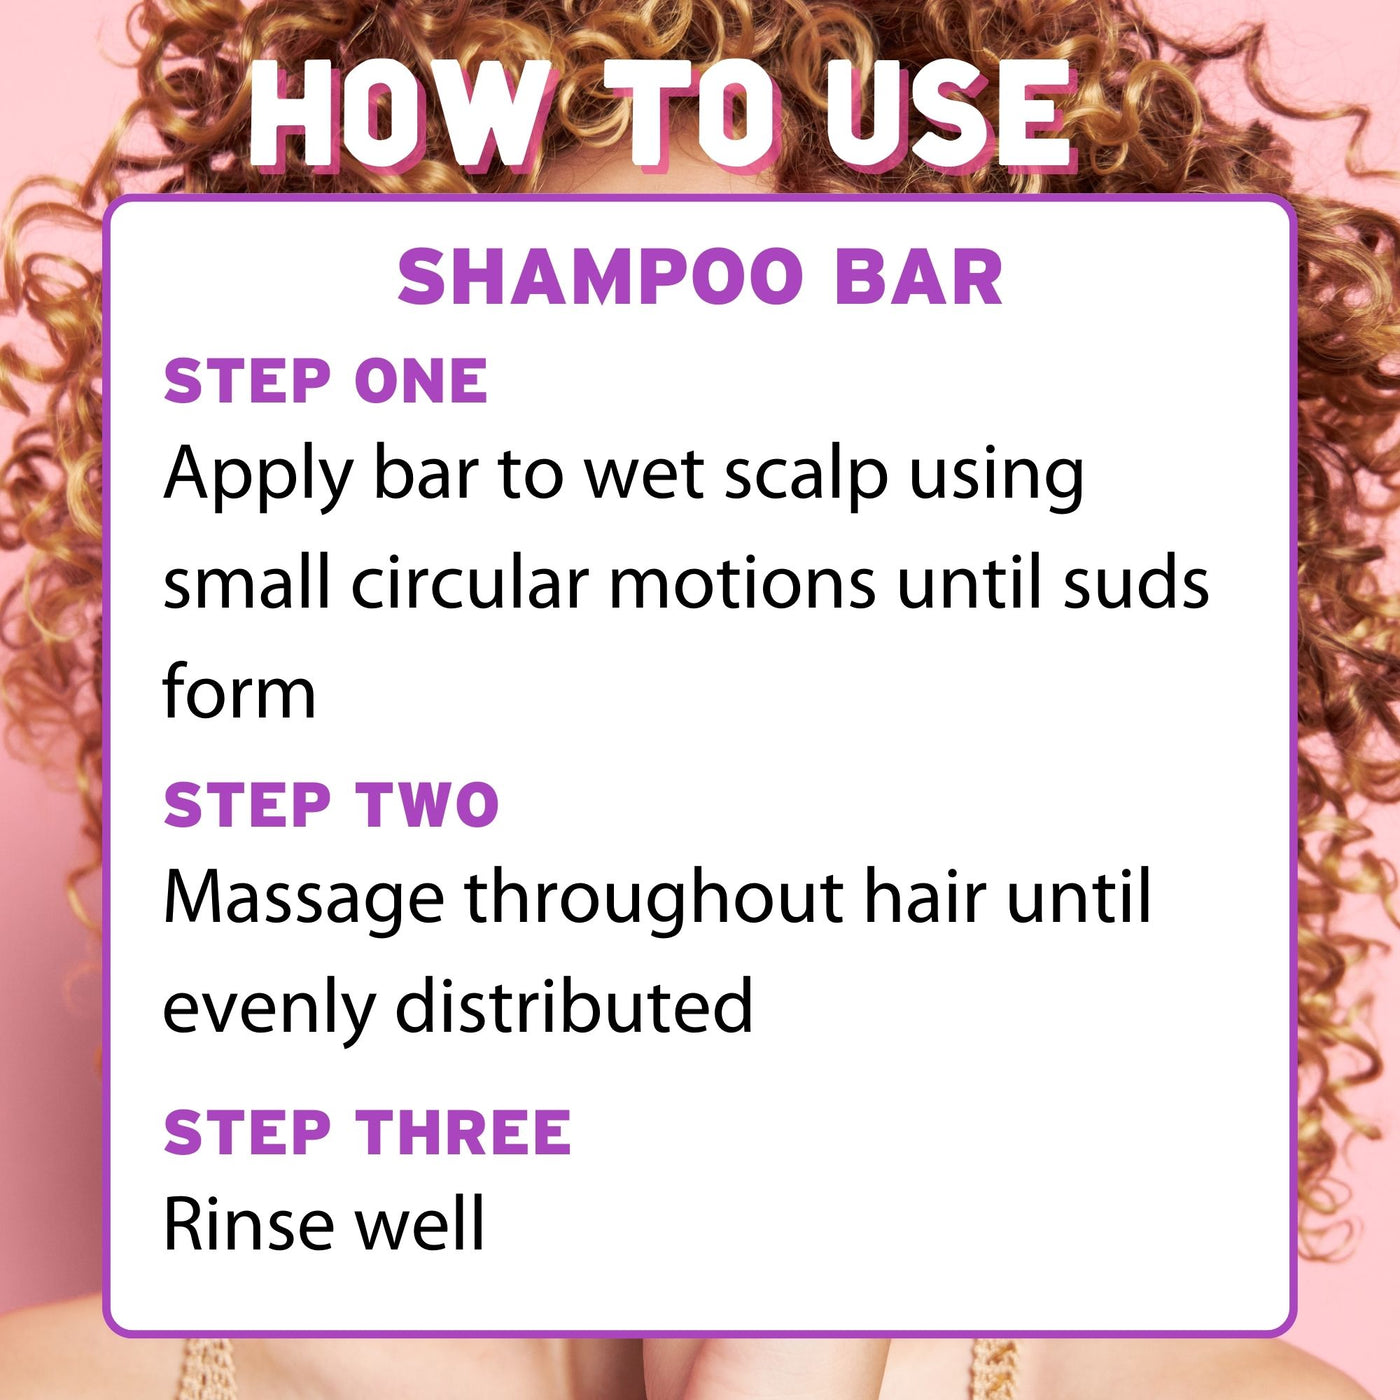 Shampoo Bar for Balance & Hydration - Coconut Vanilla - BRIXY